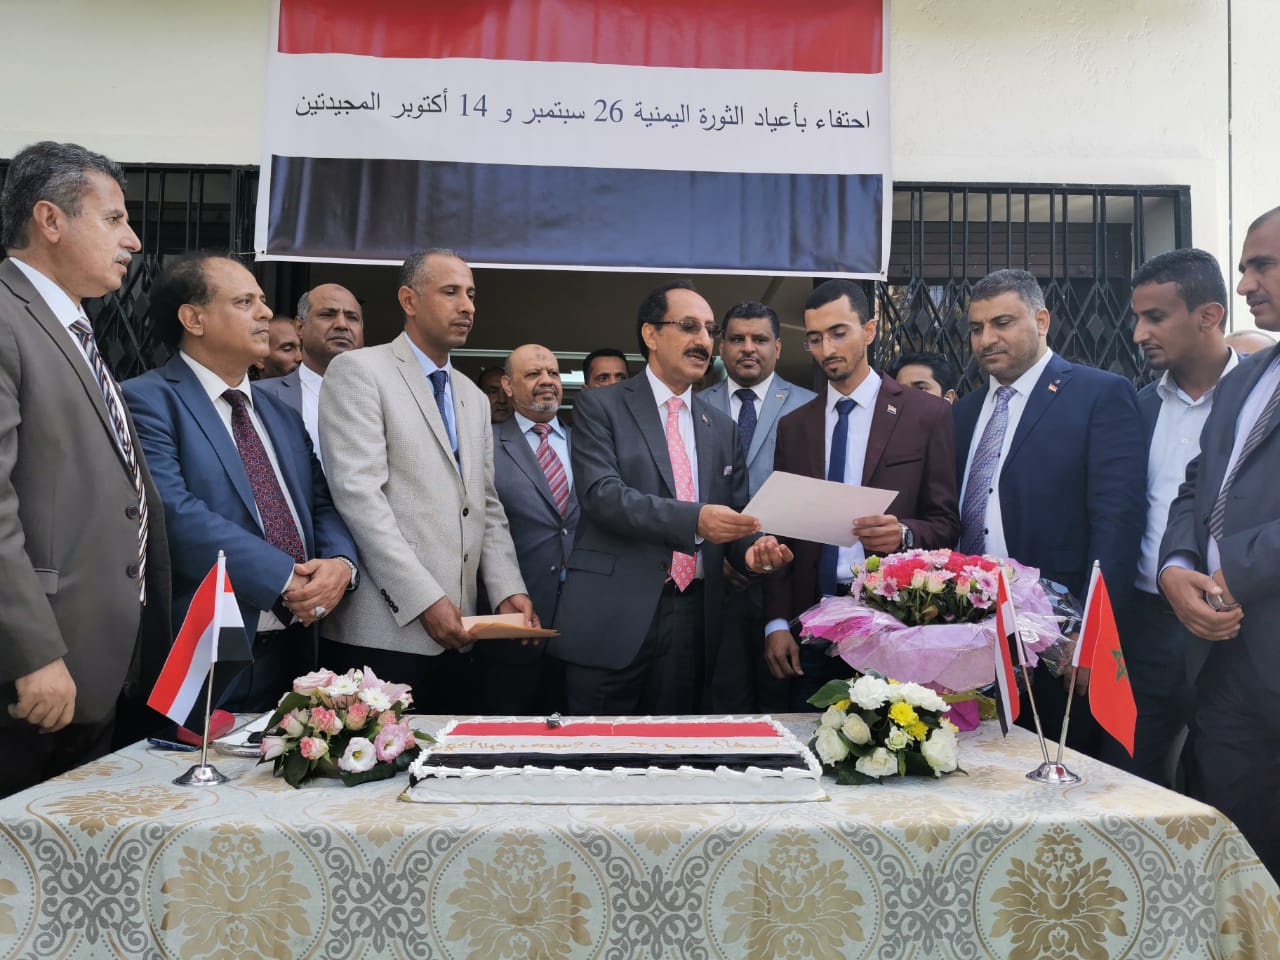 السفارة اليمنية في المغرب تكرم مخترع يمني يبدع باختراع جهاز حماية من الحريق والغاز المتسرب